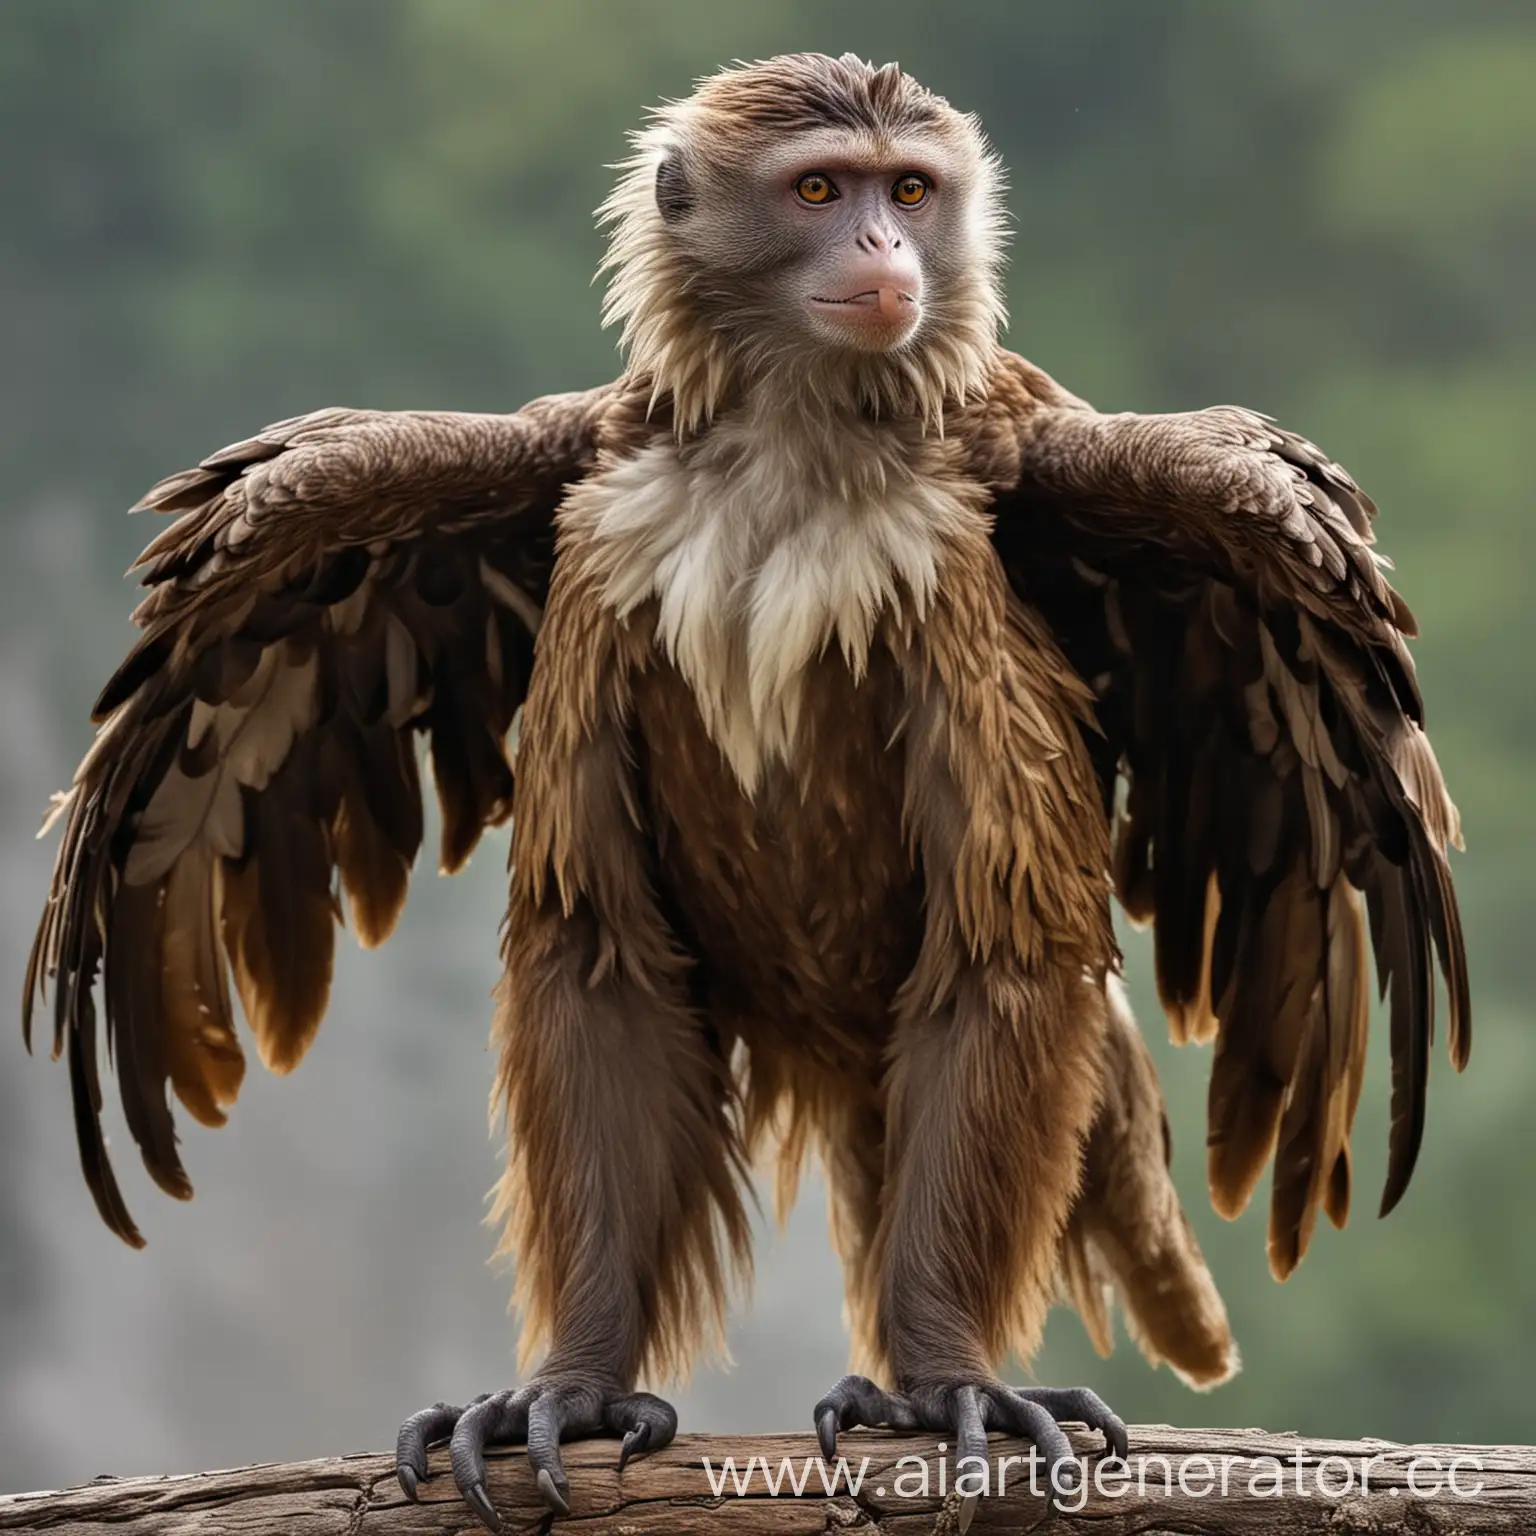 Majestic-MonkeyEagle-Hybrid-in-Forest-Habitat